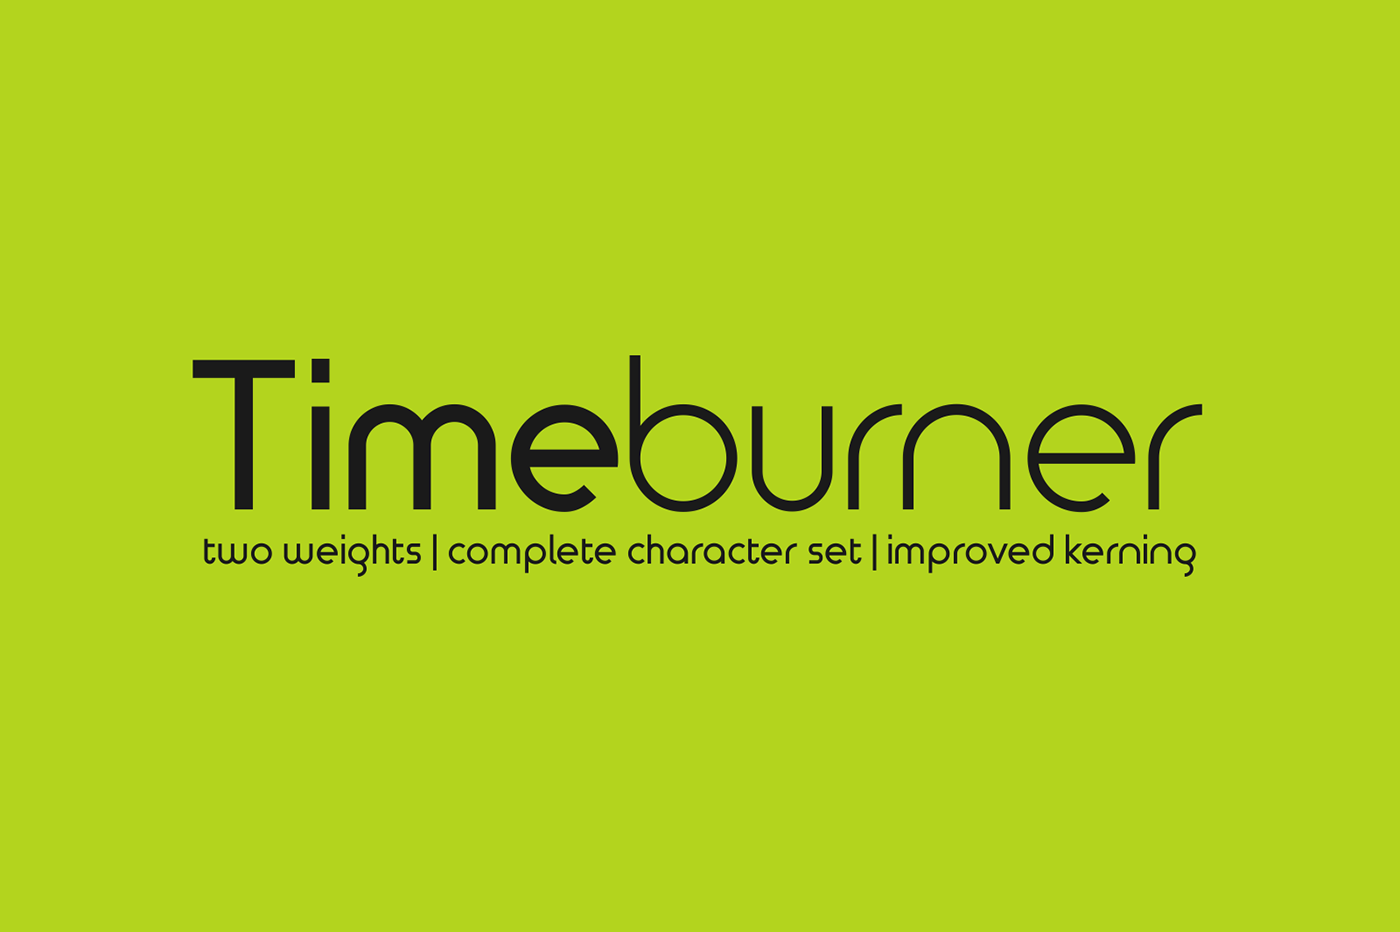 Timeburner